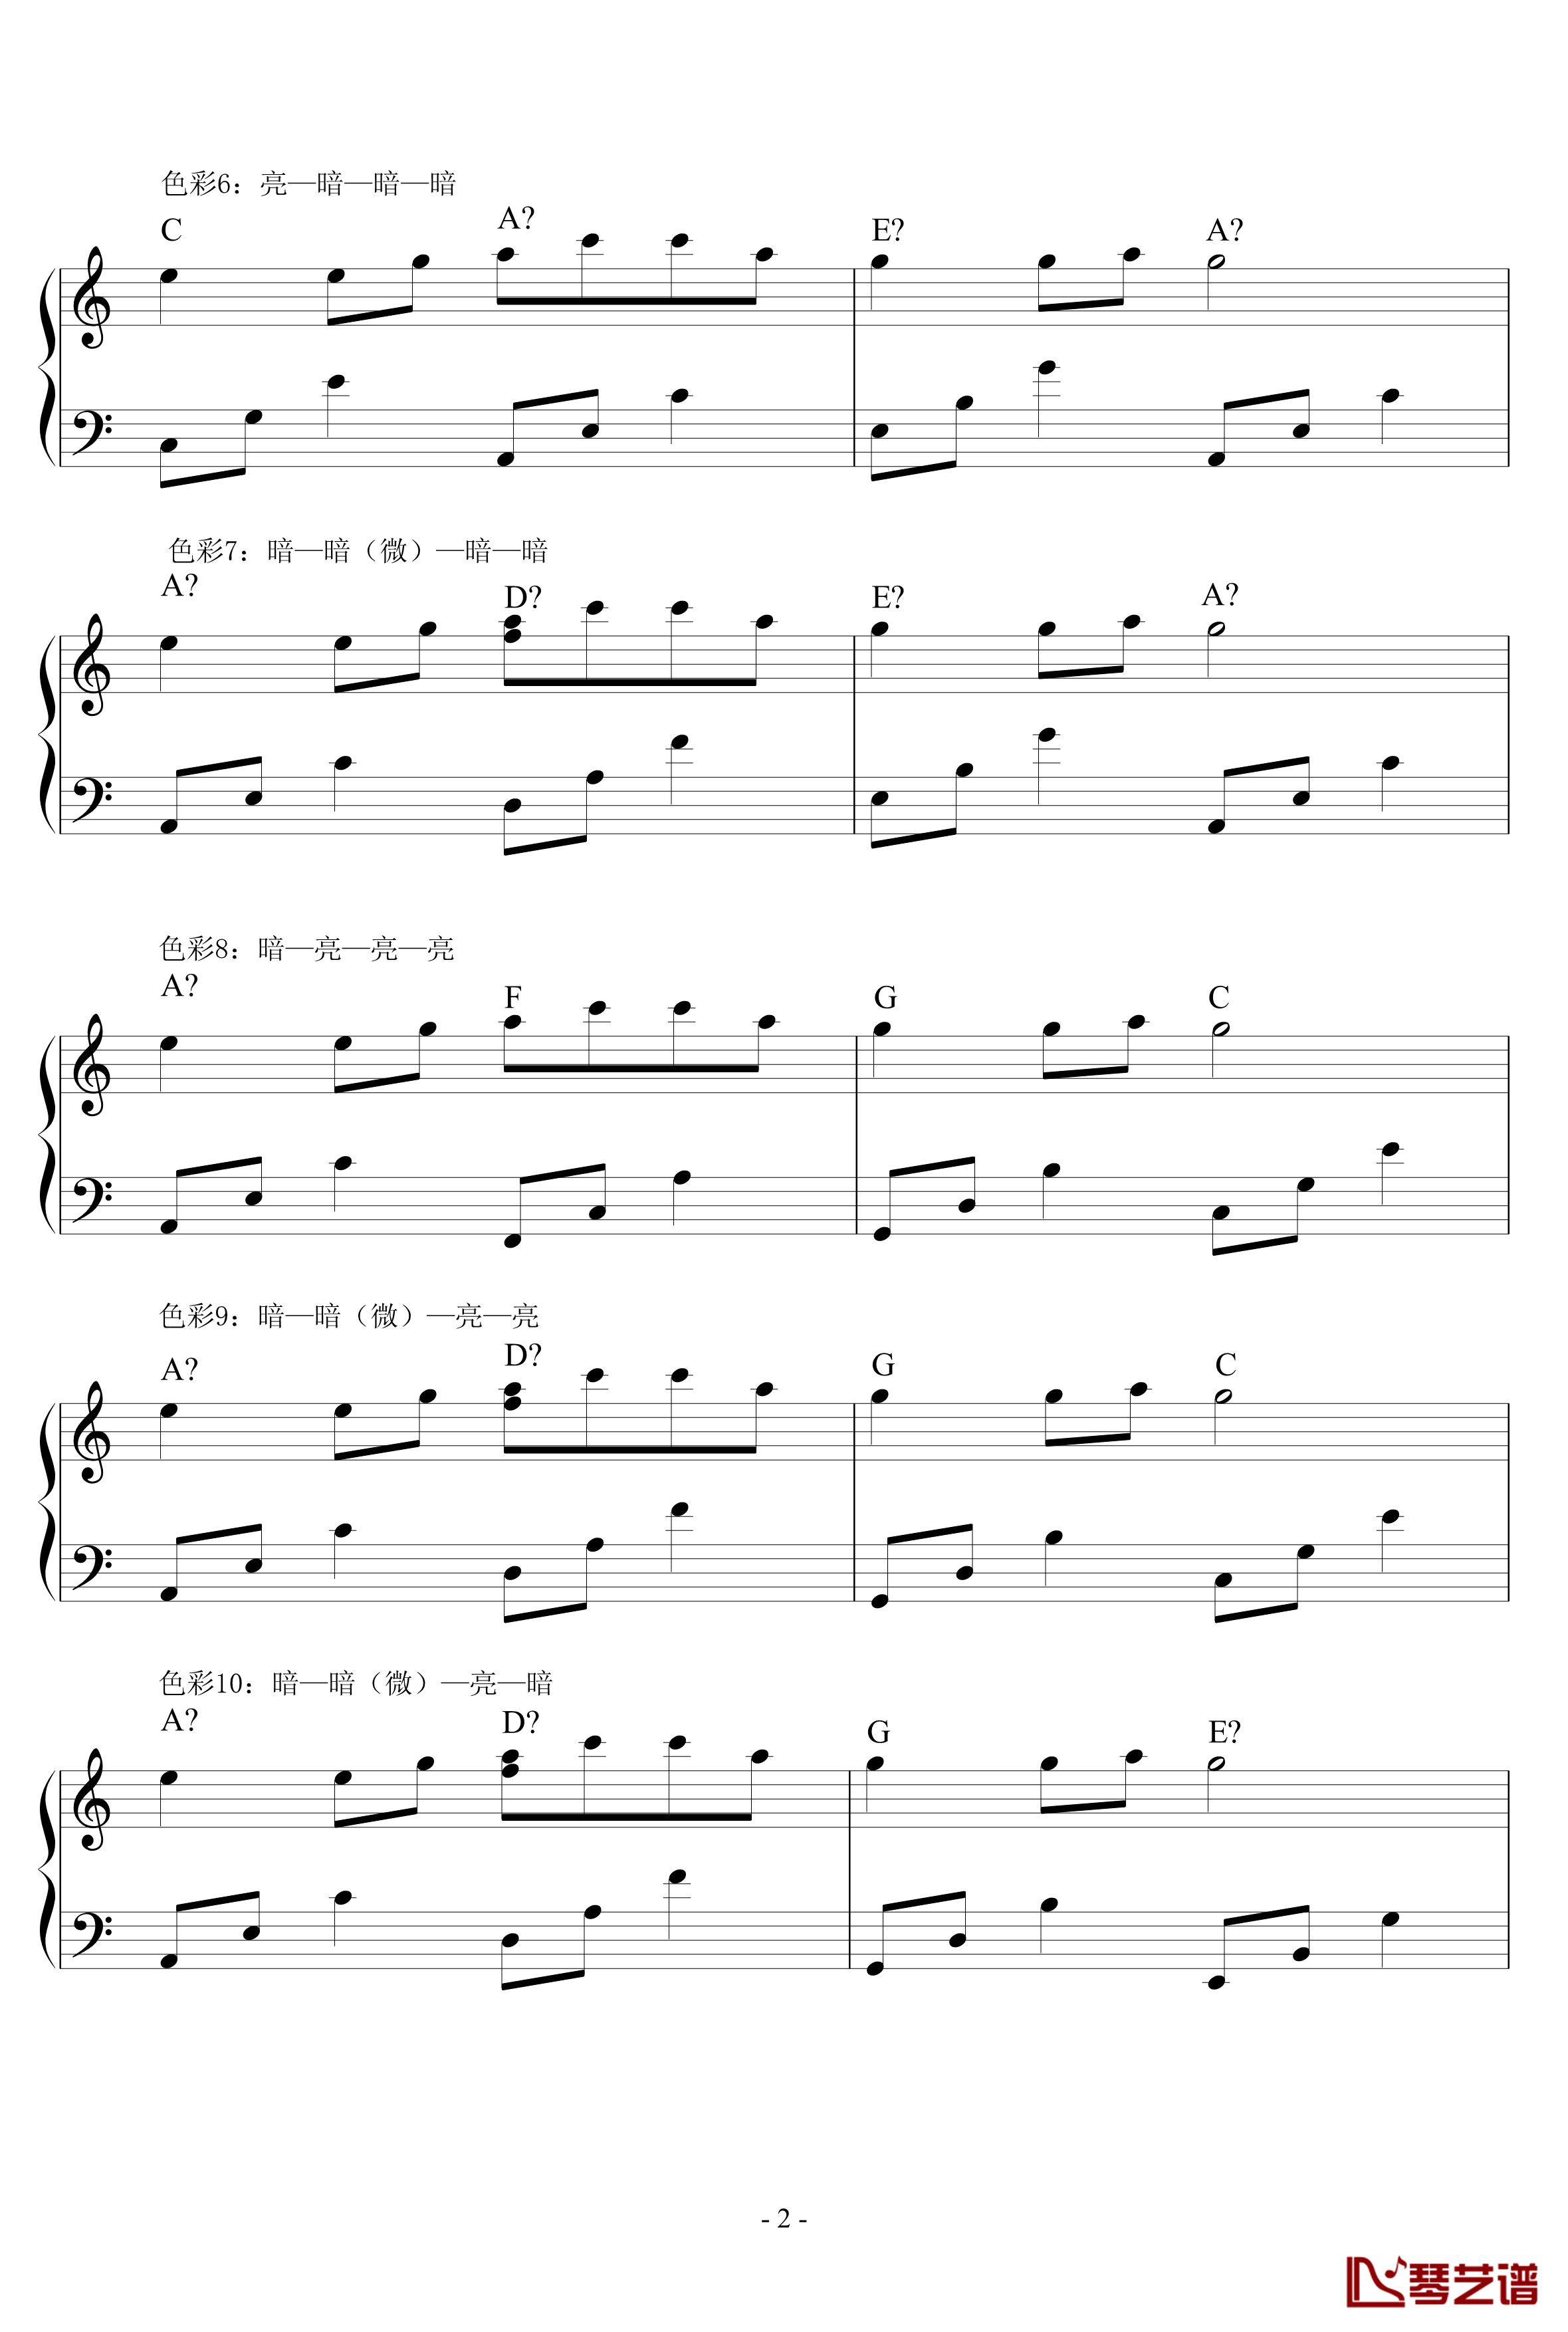 超实用即兴伴奏教材1钢琴谱-常用和弦-鸠玖2